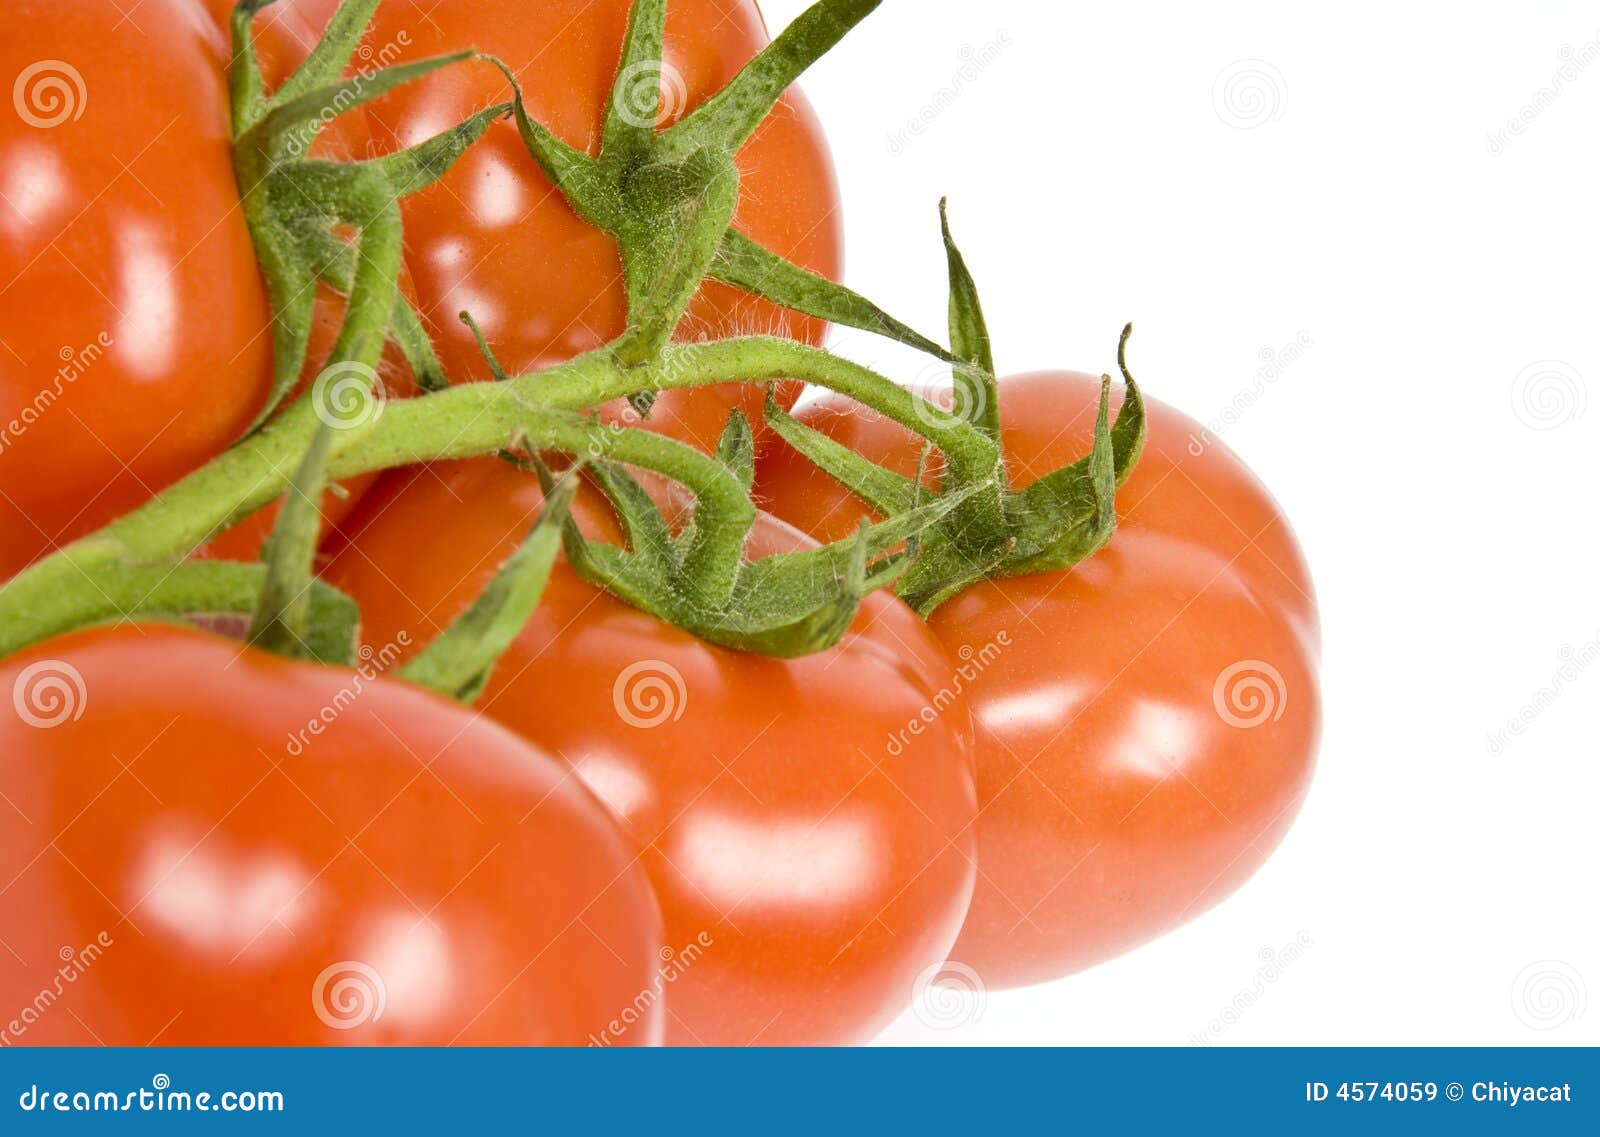 vine ripen tomatoes